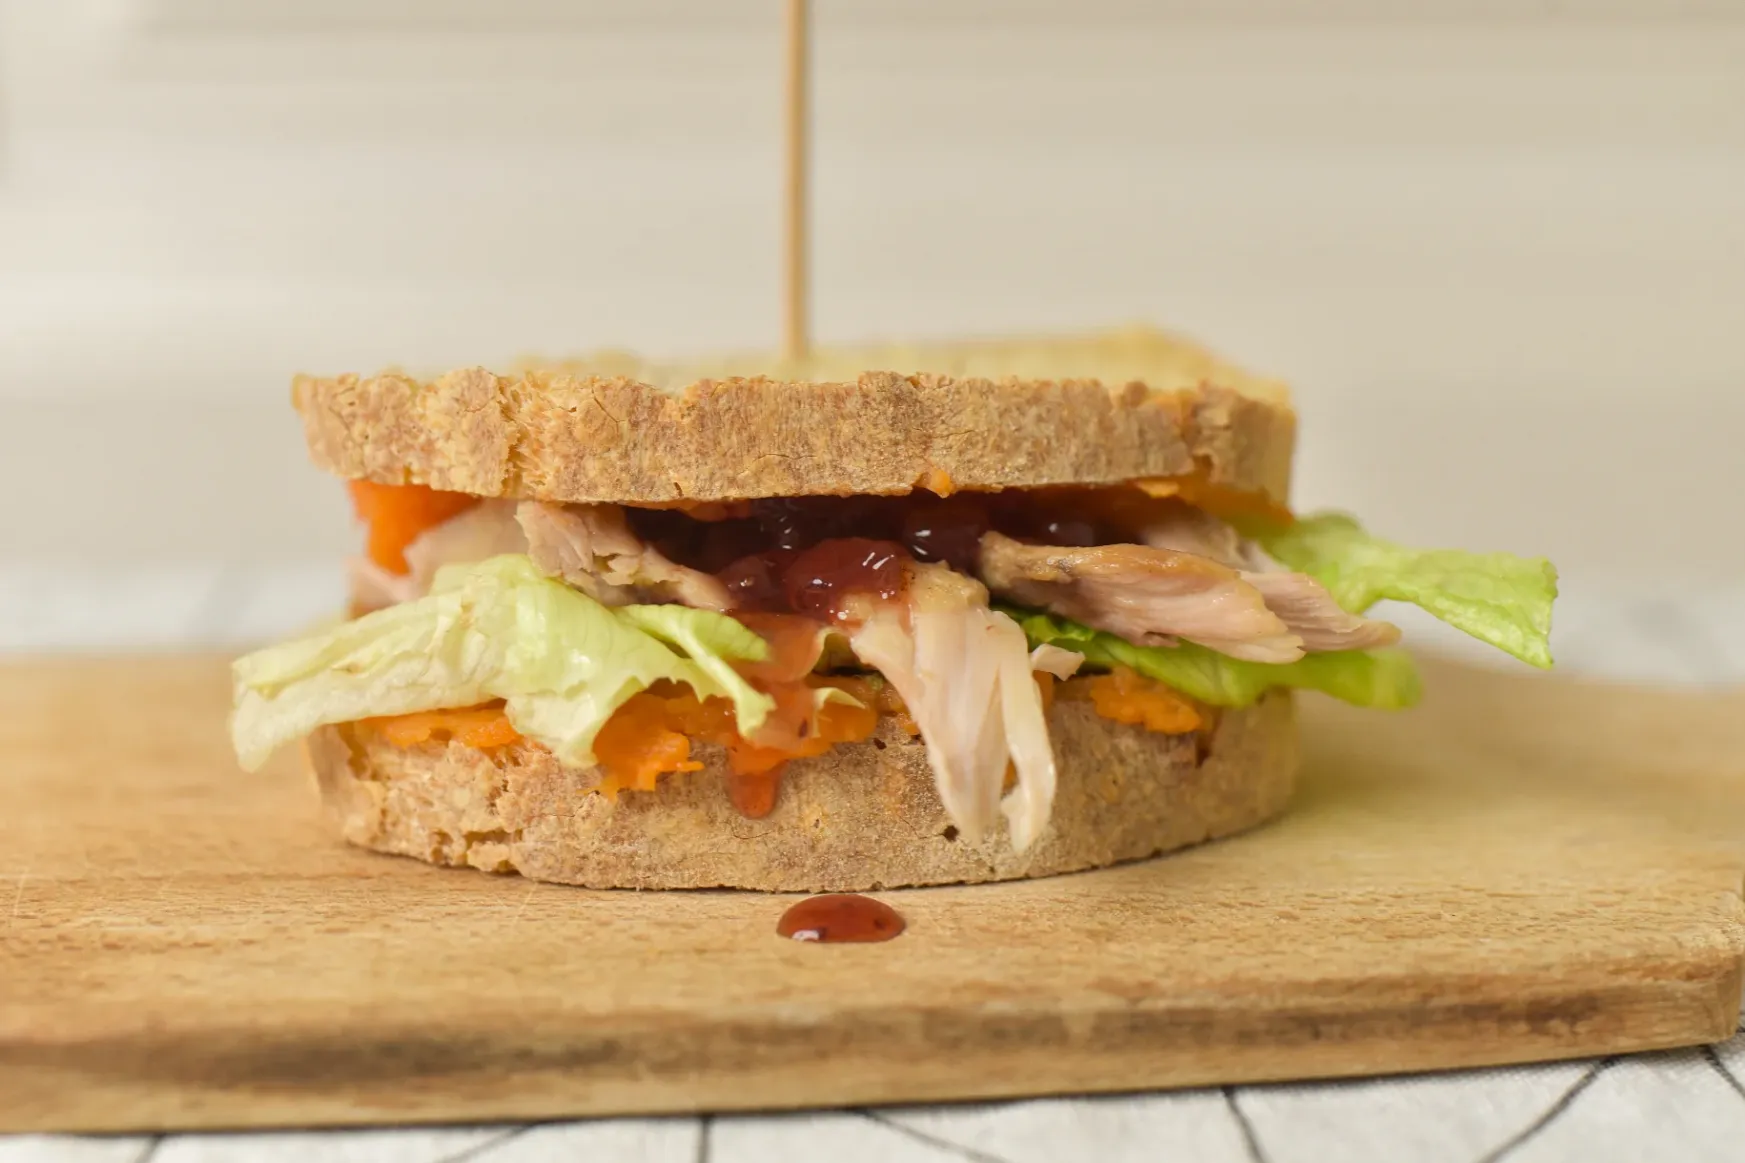 Ross hálaadási maradékokból készült szendvicse sokkal több mint csak egy szendvics